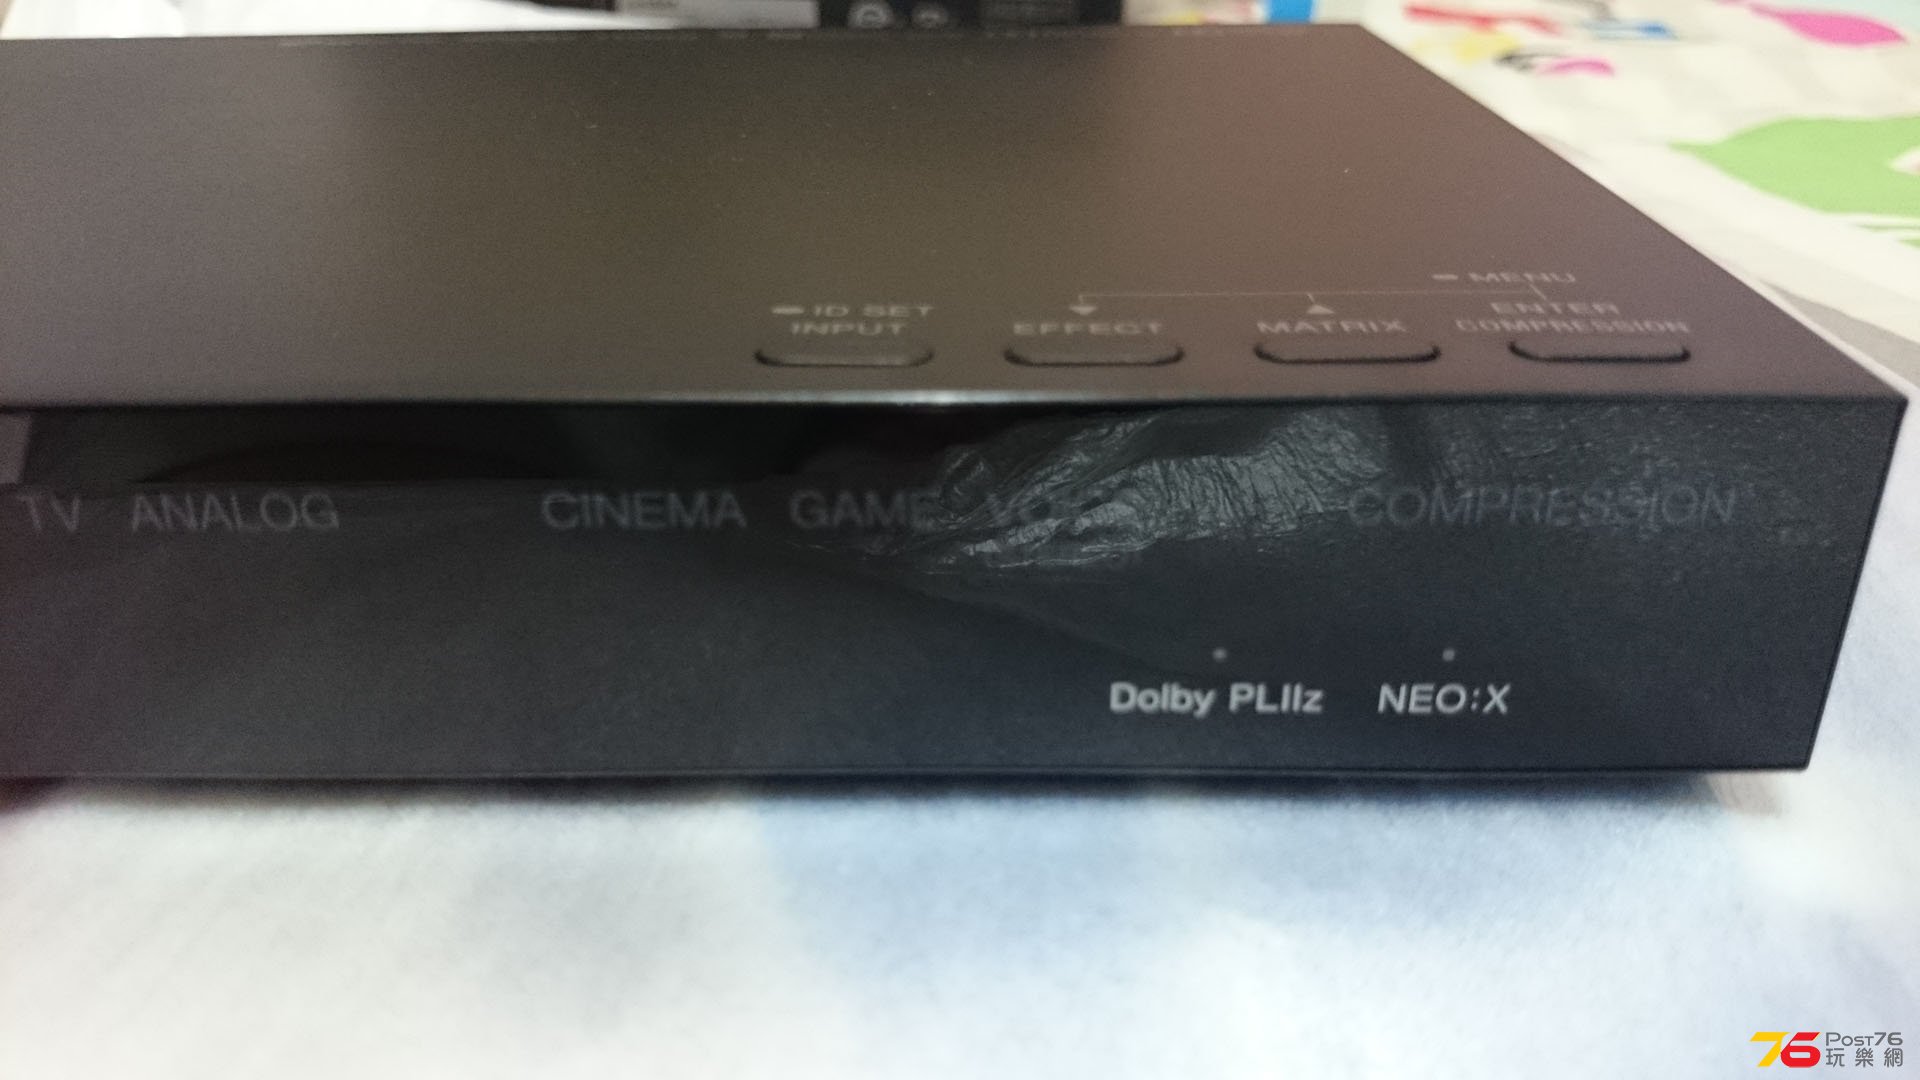 Dolby PLllz, NEO:X